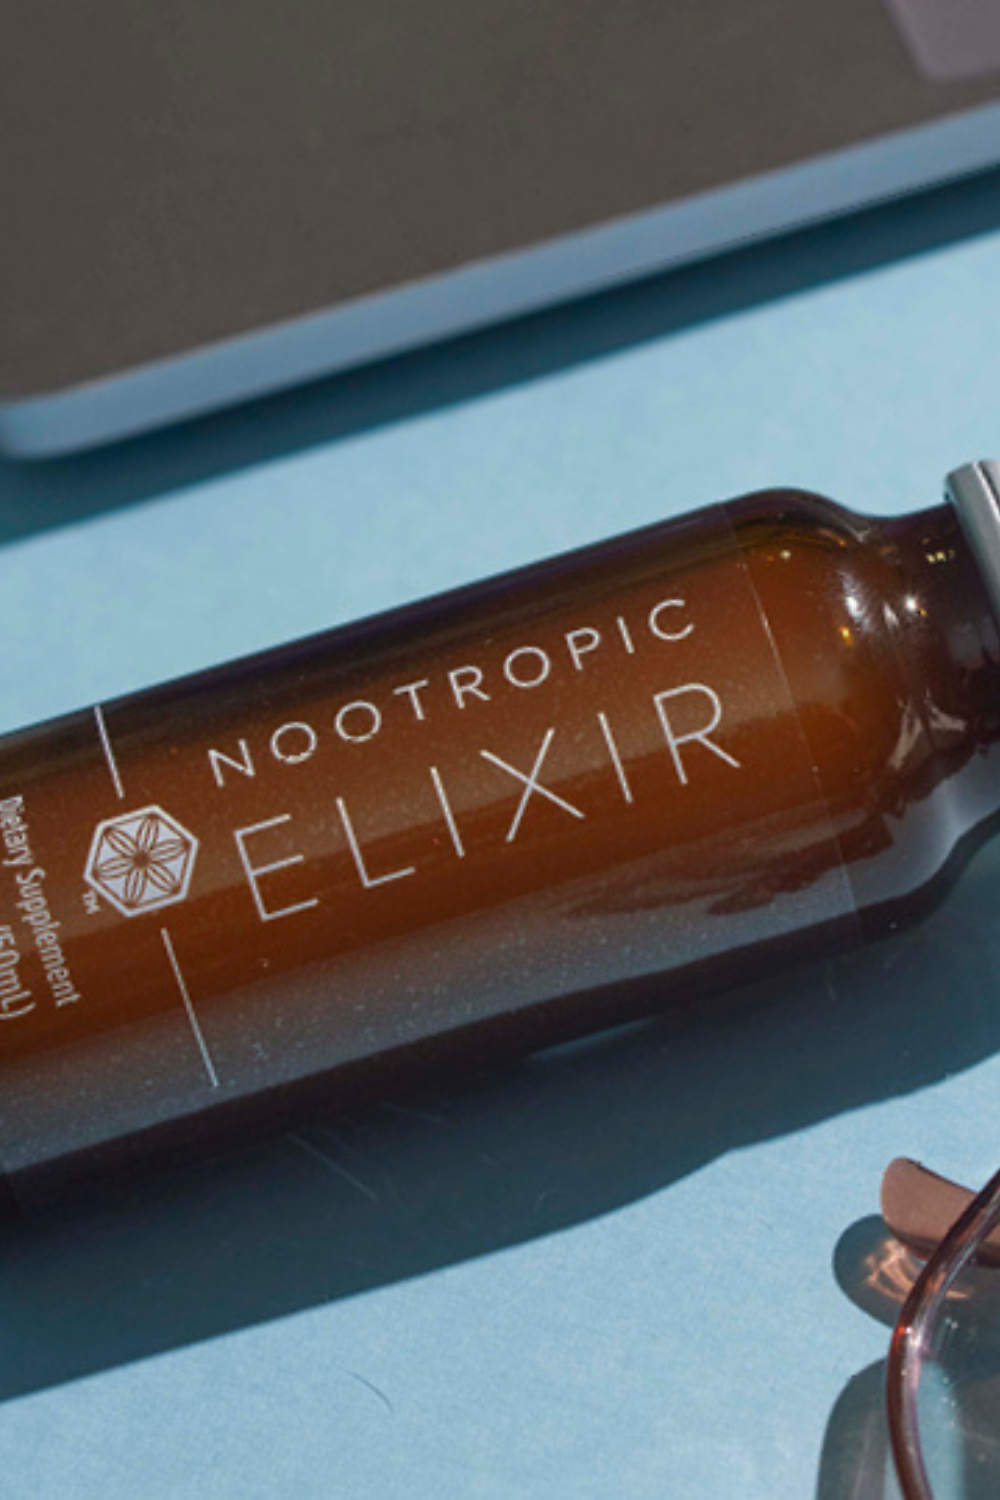 Fuel Your Focus With Nootropic Elixir